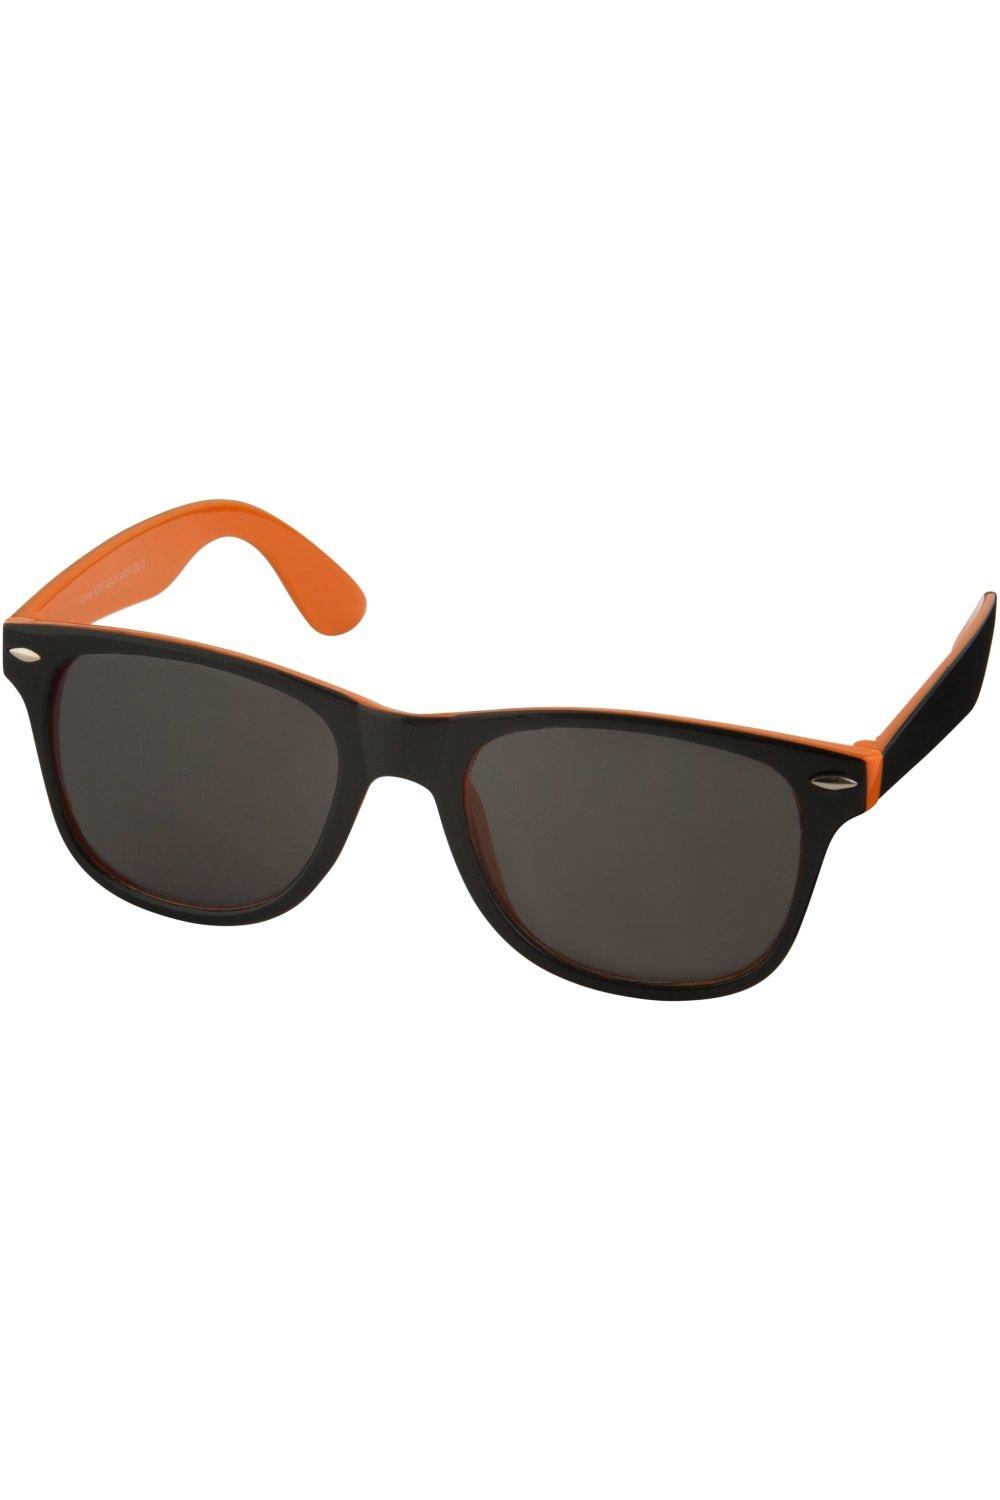 Солнцезащитные очки Sun Ray — черные с яркими акцентами (2 шт. в упаковке) Bullet, оранжевый sun buddies янтарные солнцезащитные очки